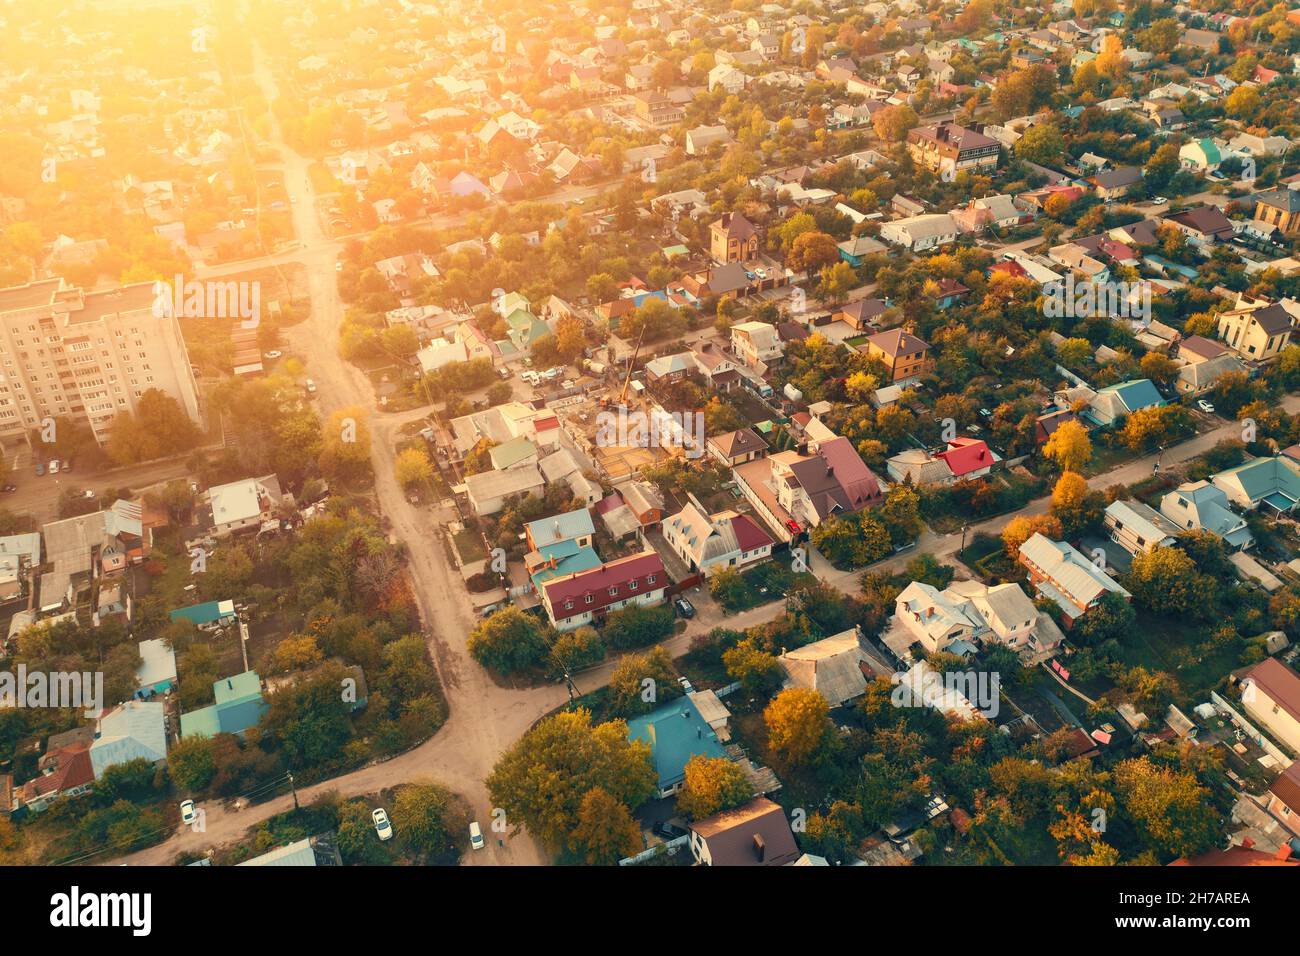 Vue aérienne au coucher du soleil de la zone résidentielle avec de nombreuses maisons.Les bâtiments de banlieue se trouvent à proximité. Banque D'Images